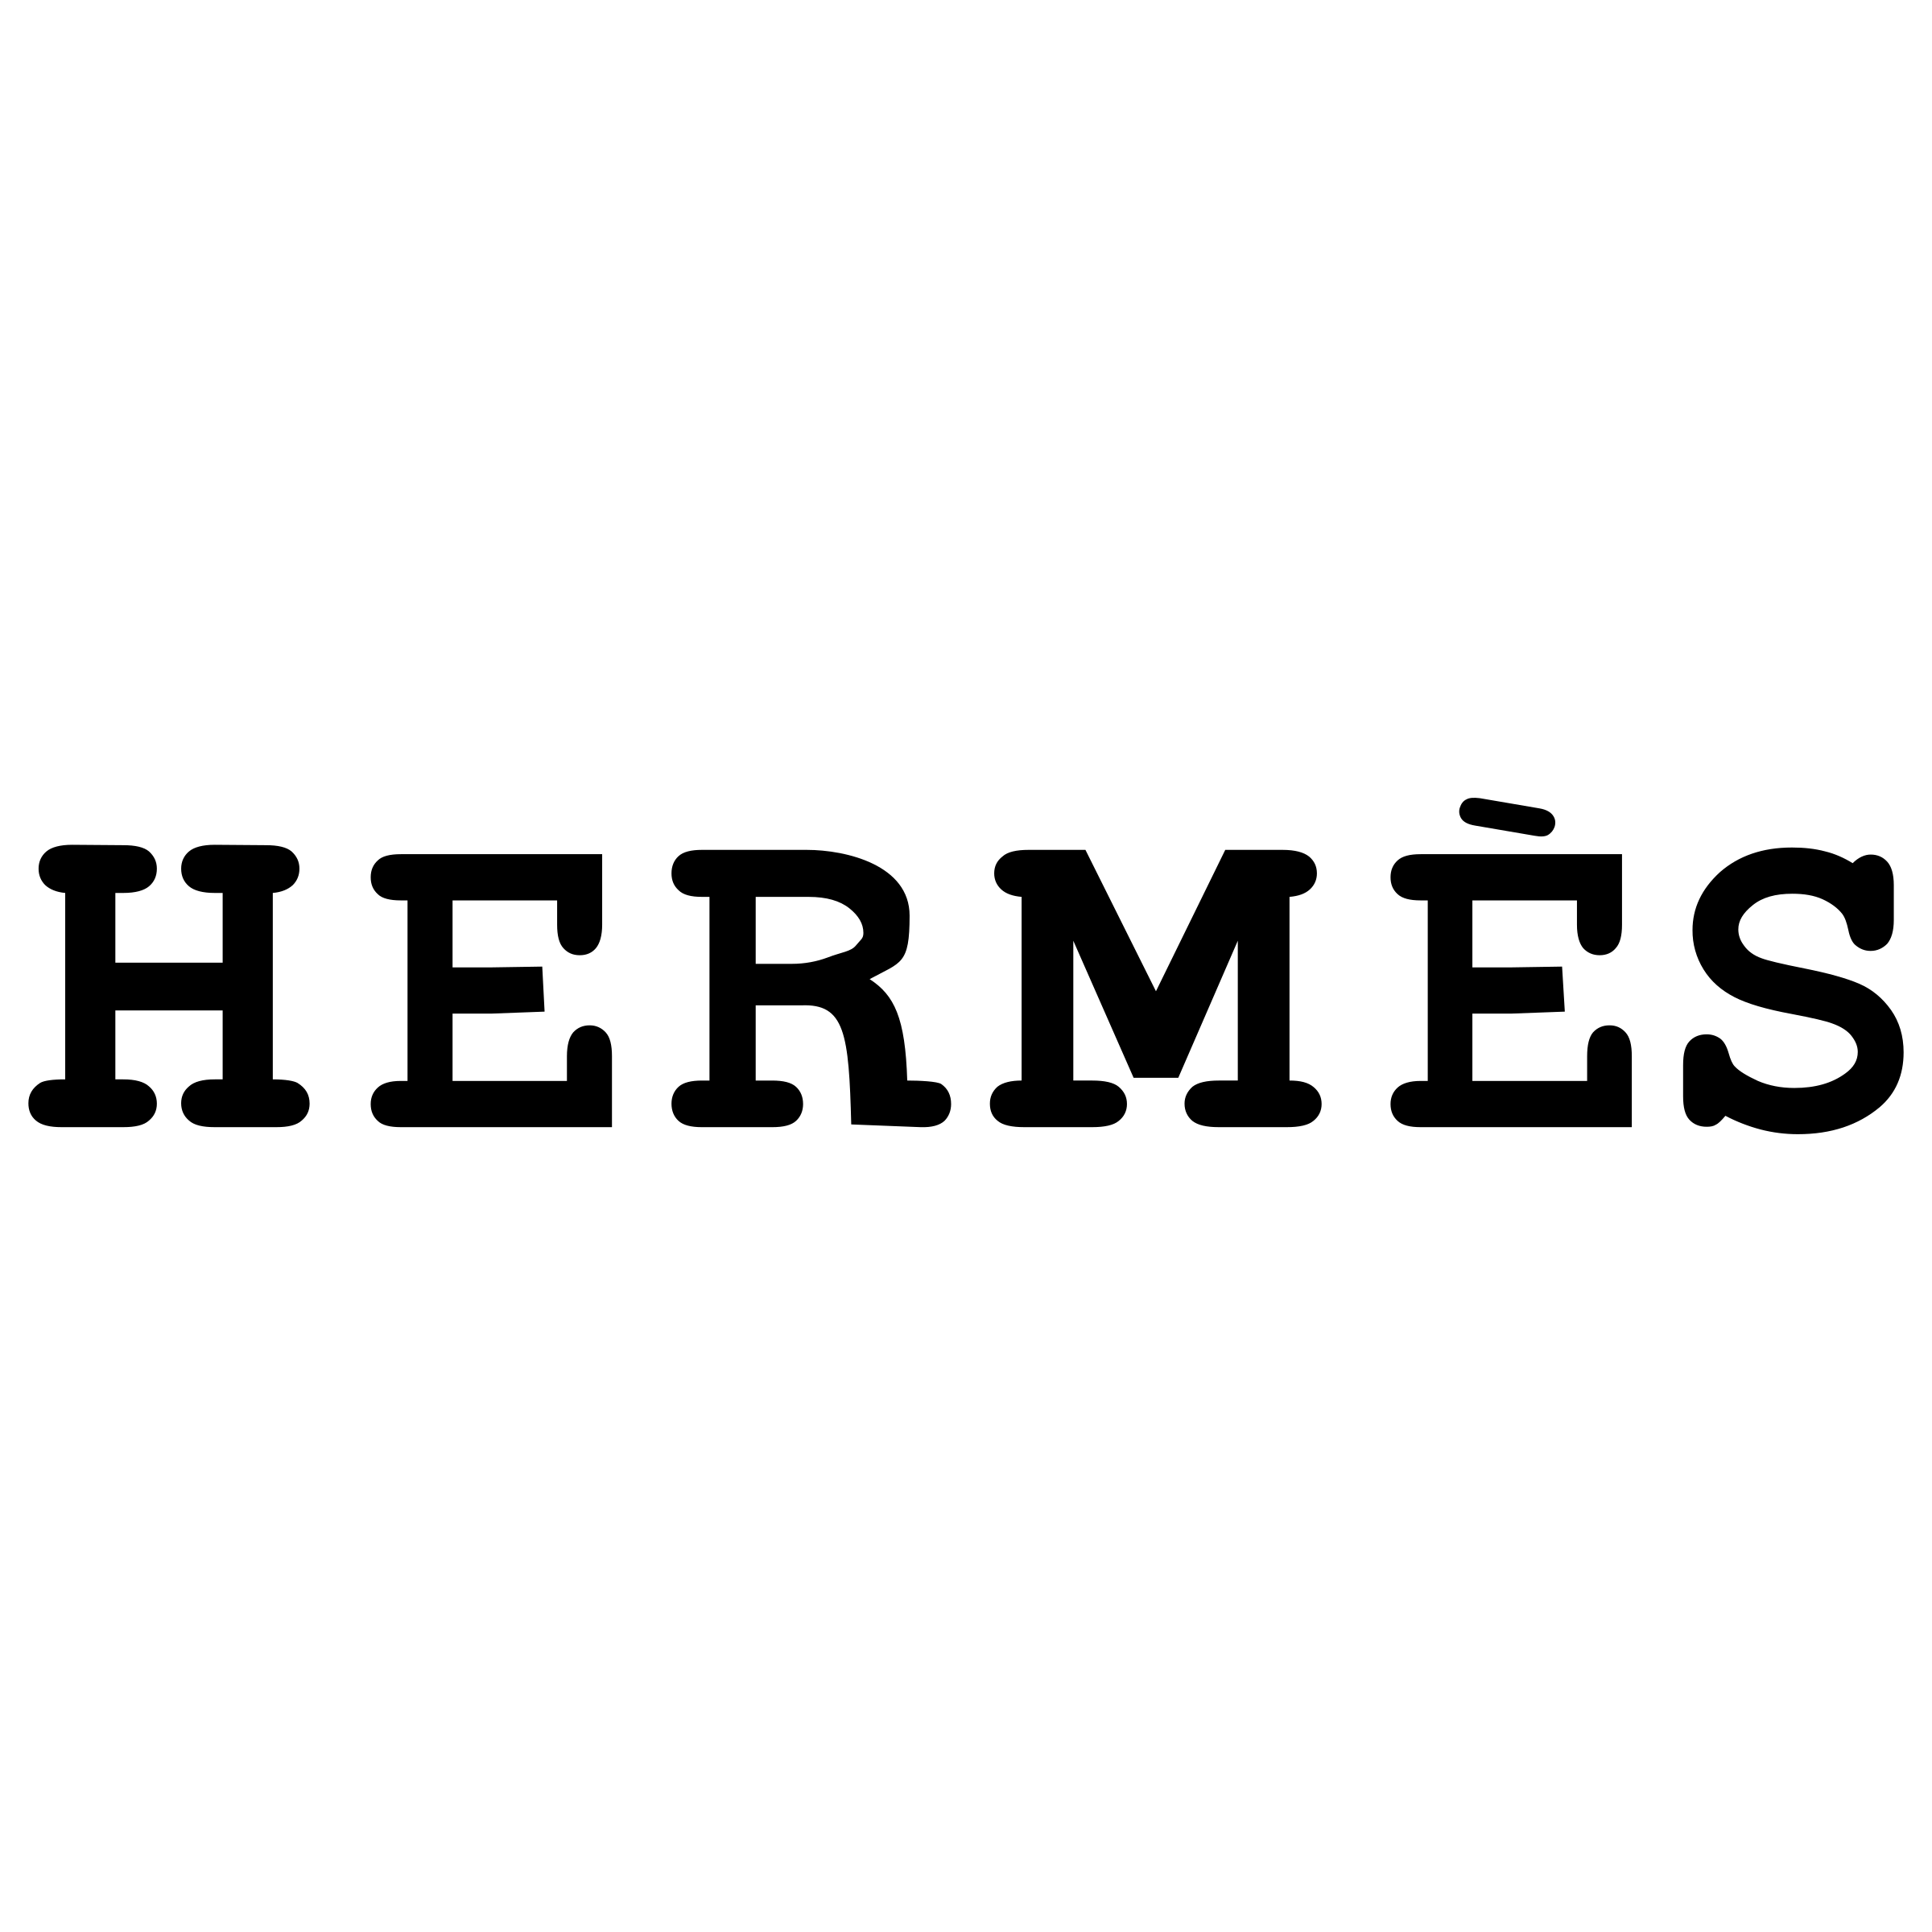 Hermes Transparent Logo - Hermes Logo PNG Transparent & SVG Vector